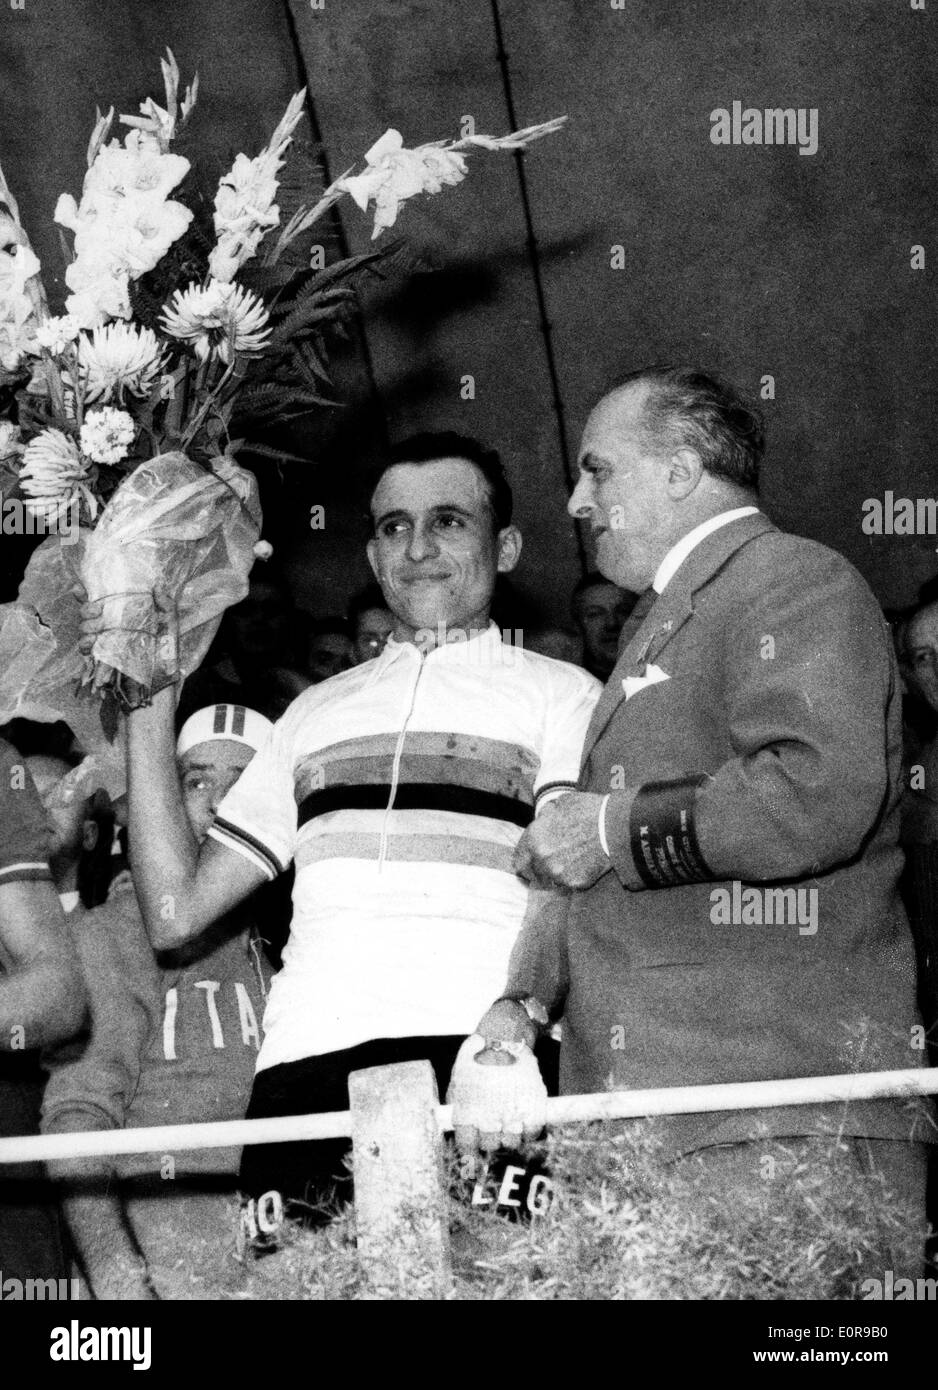 Ercole Baldini after winning the World Cycling Championship Stock Photo